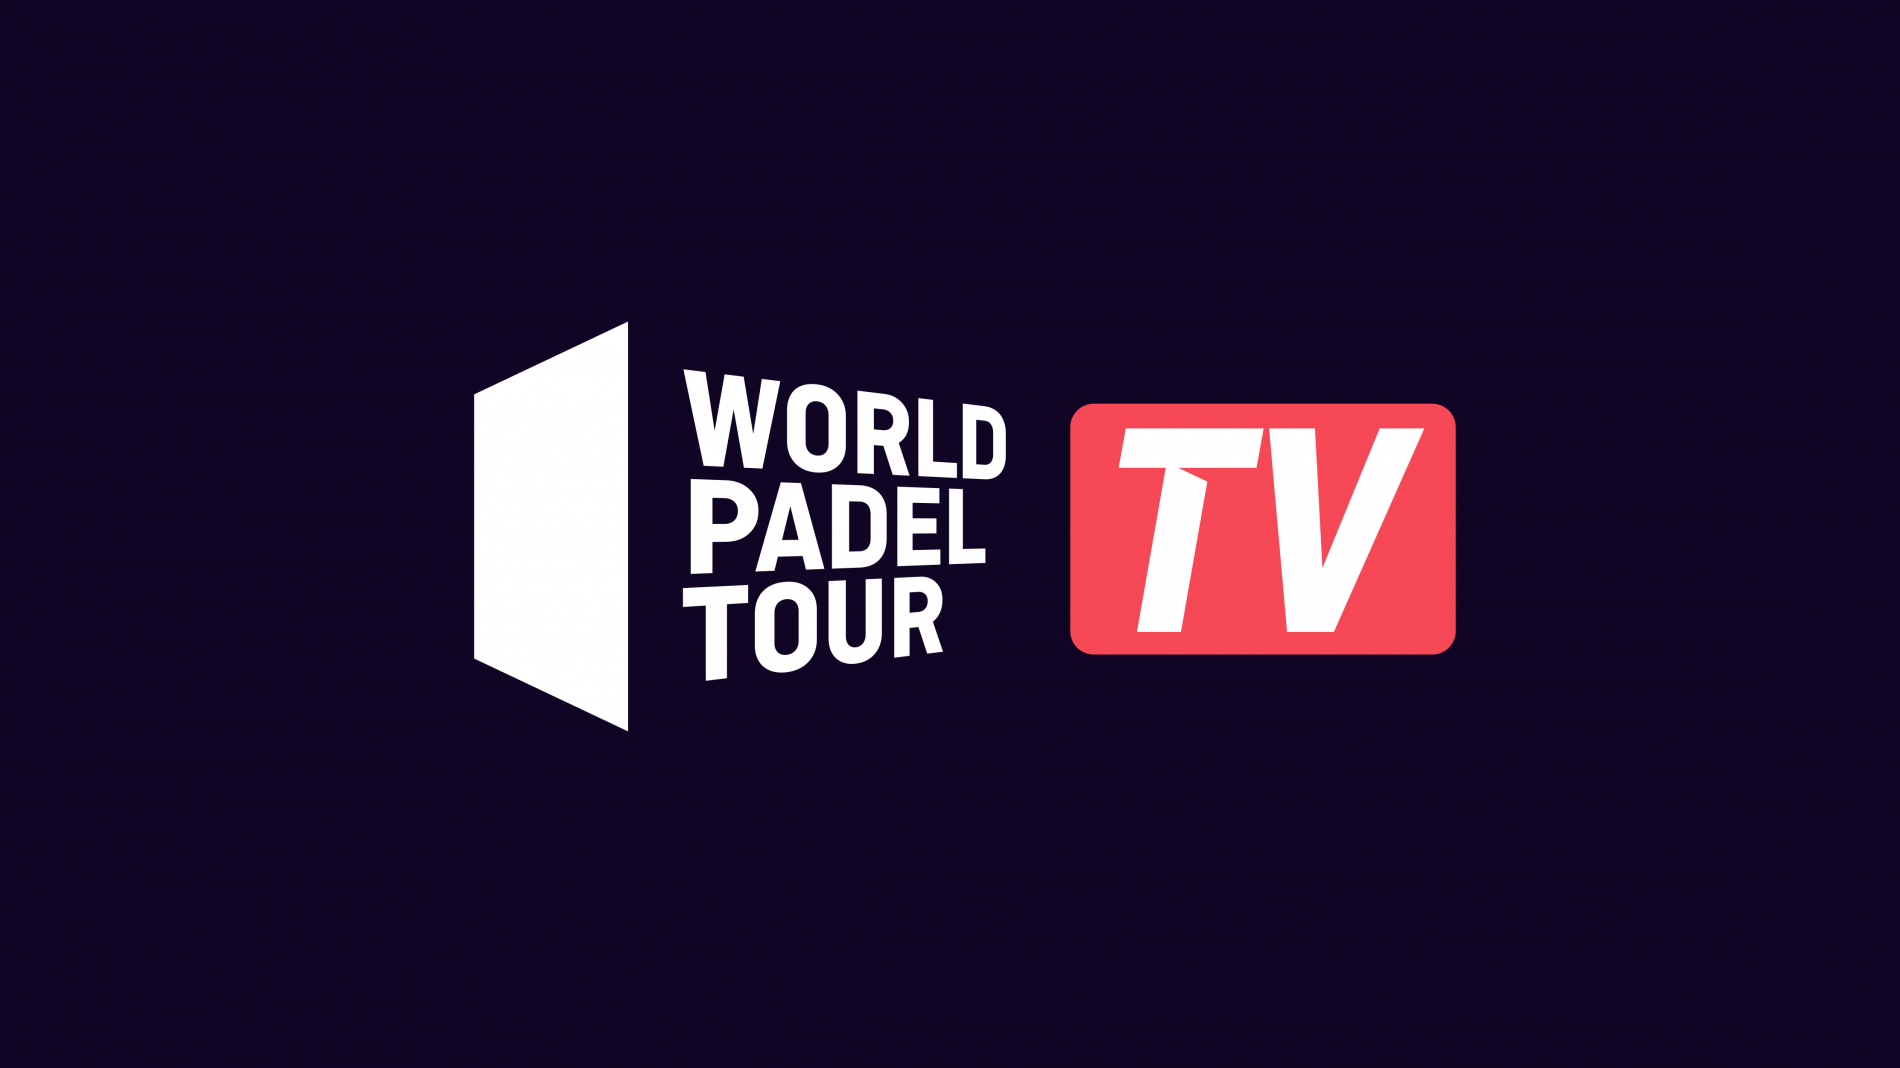 World Padel Tour televisión 16 9